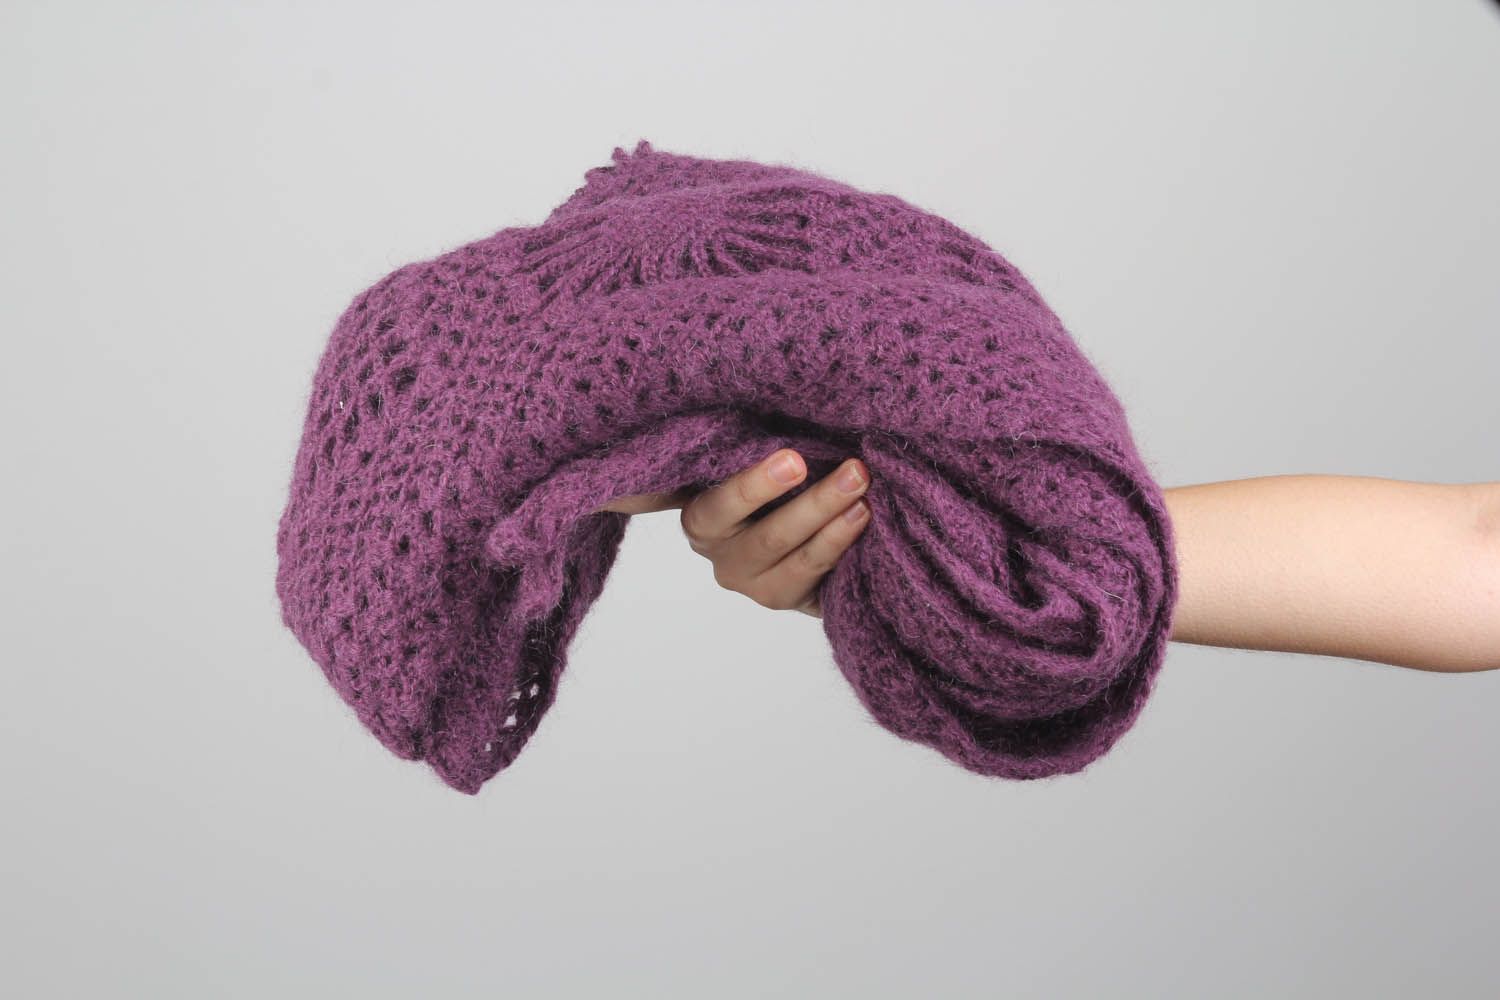 Châle tricoté main en fils de laine violets photo 2